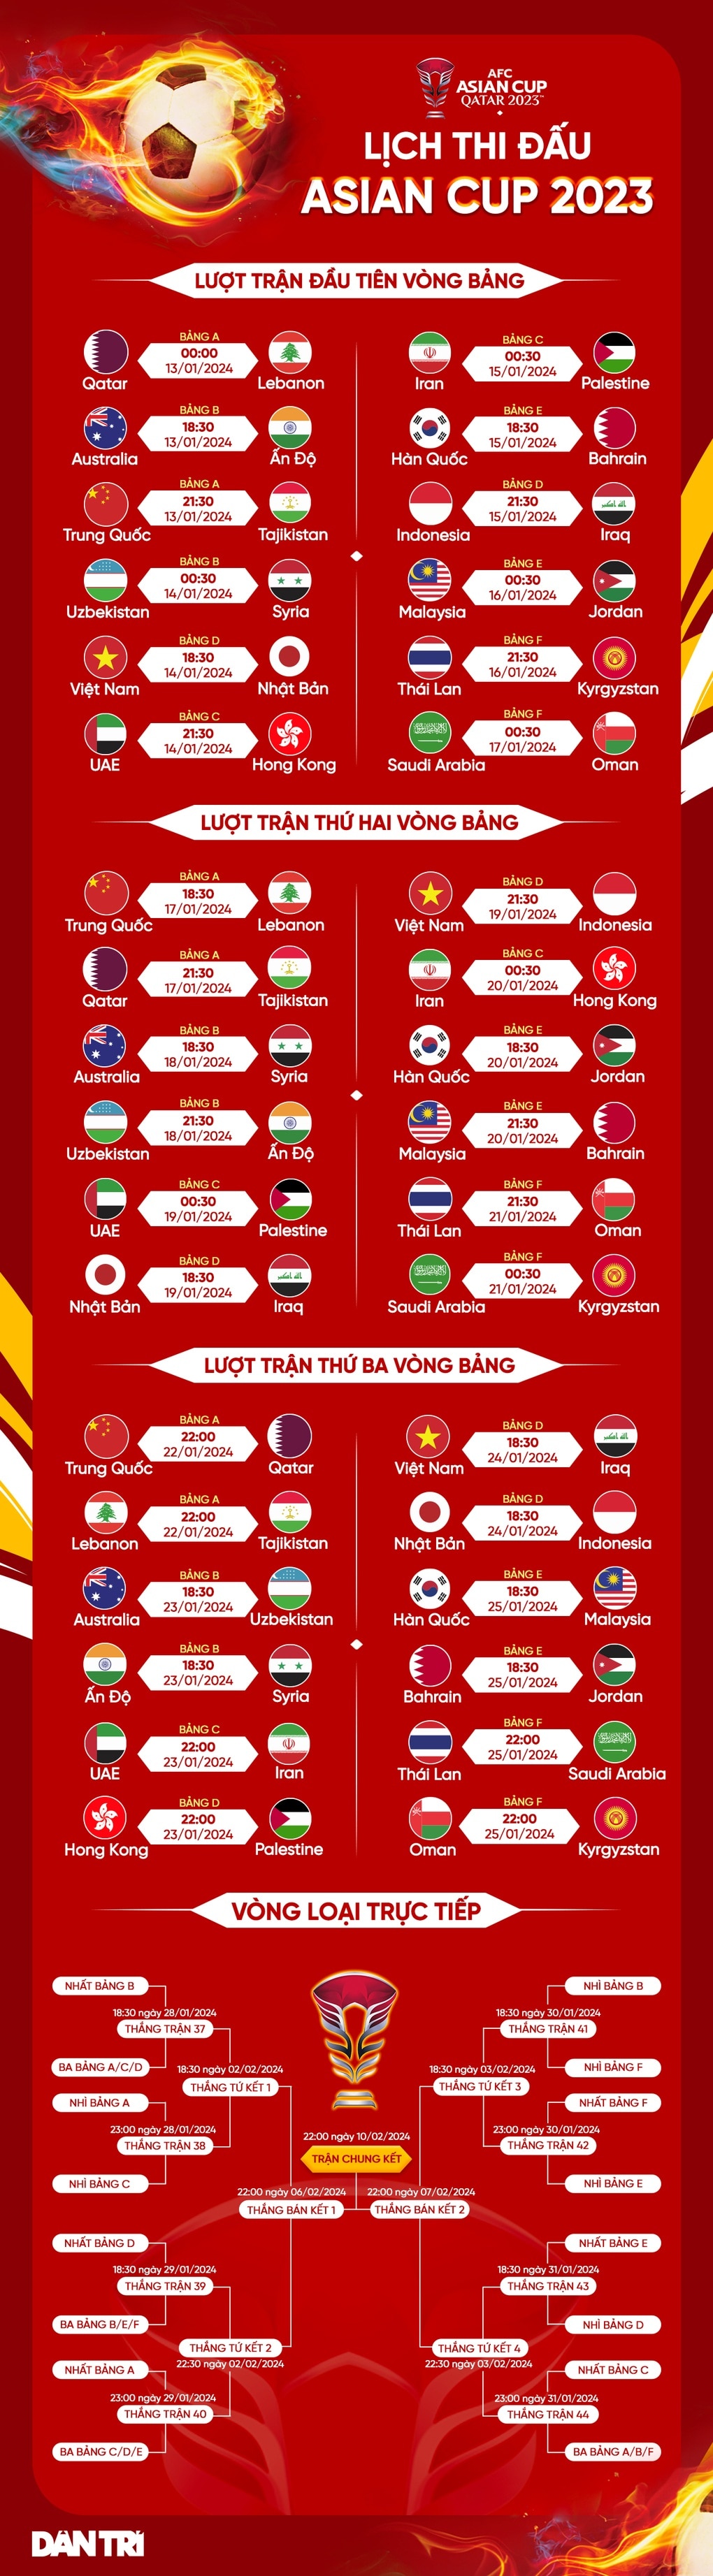 Bóng đá Indonesia phủ nhận thông tin HLV Park dẫn dắt tuyển quốc gia - 3